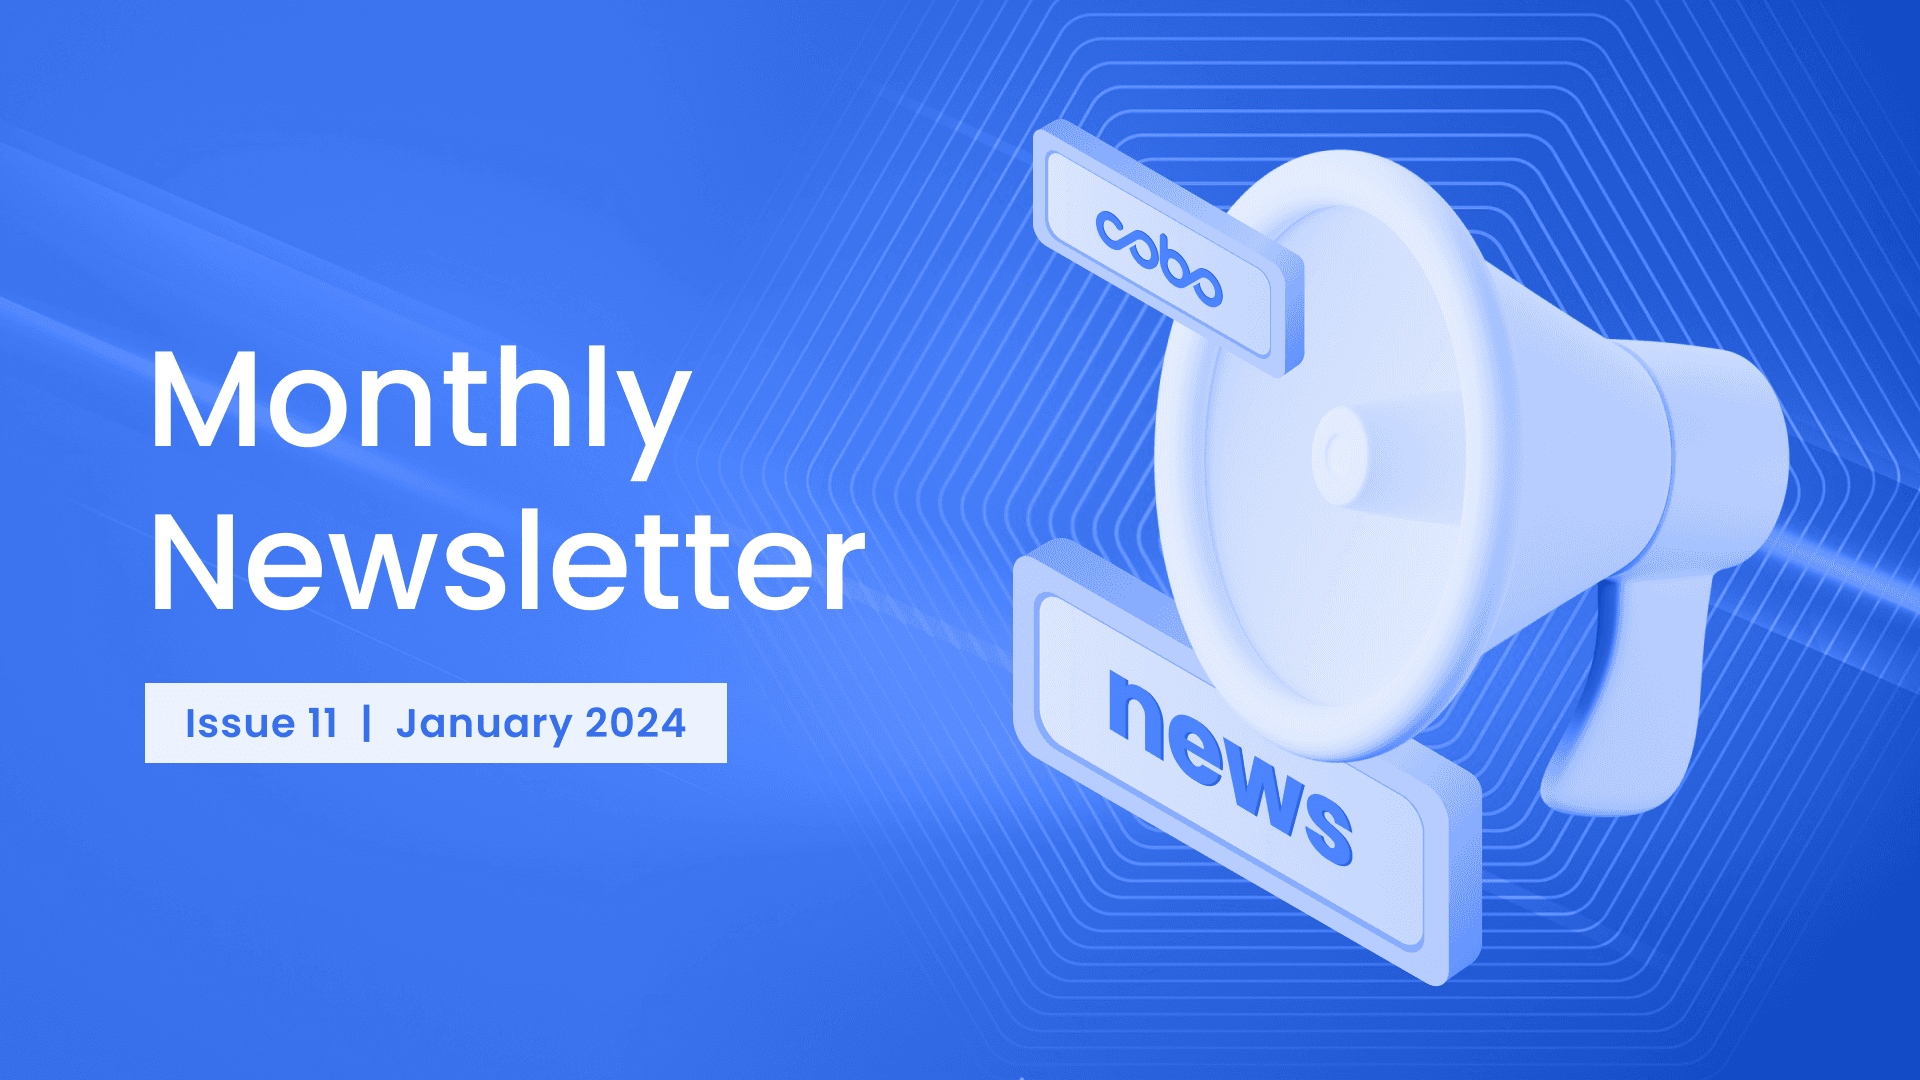 Cobo Monthly Newsletter - January 2024